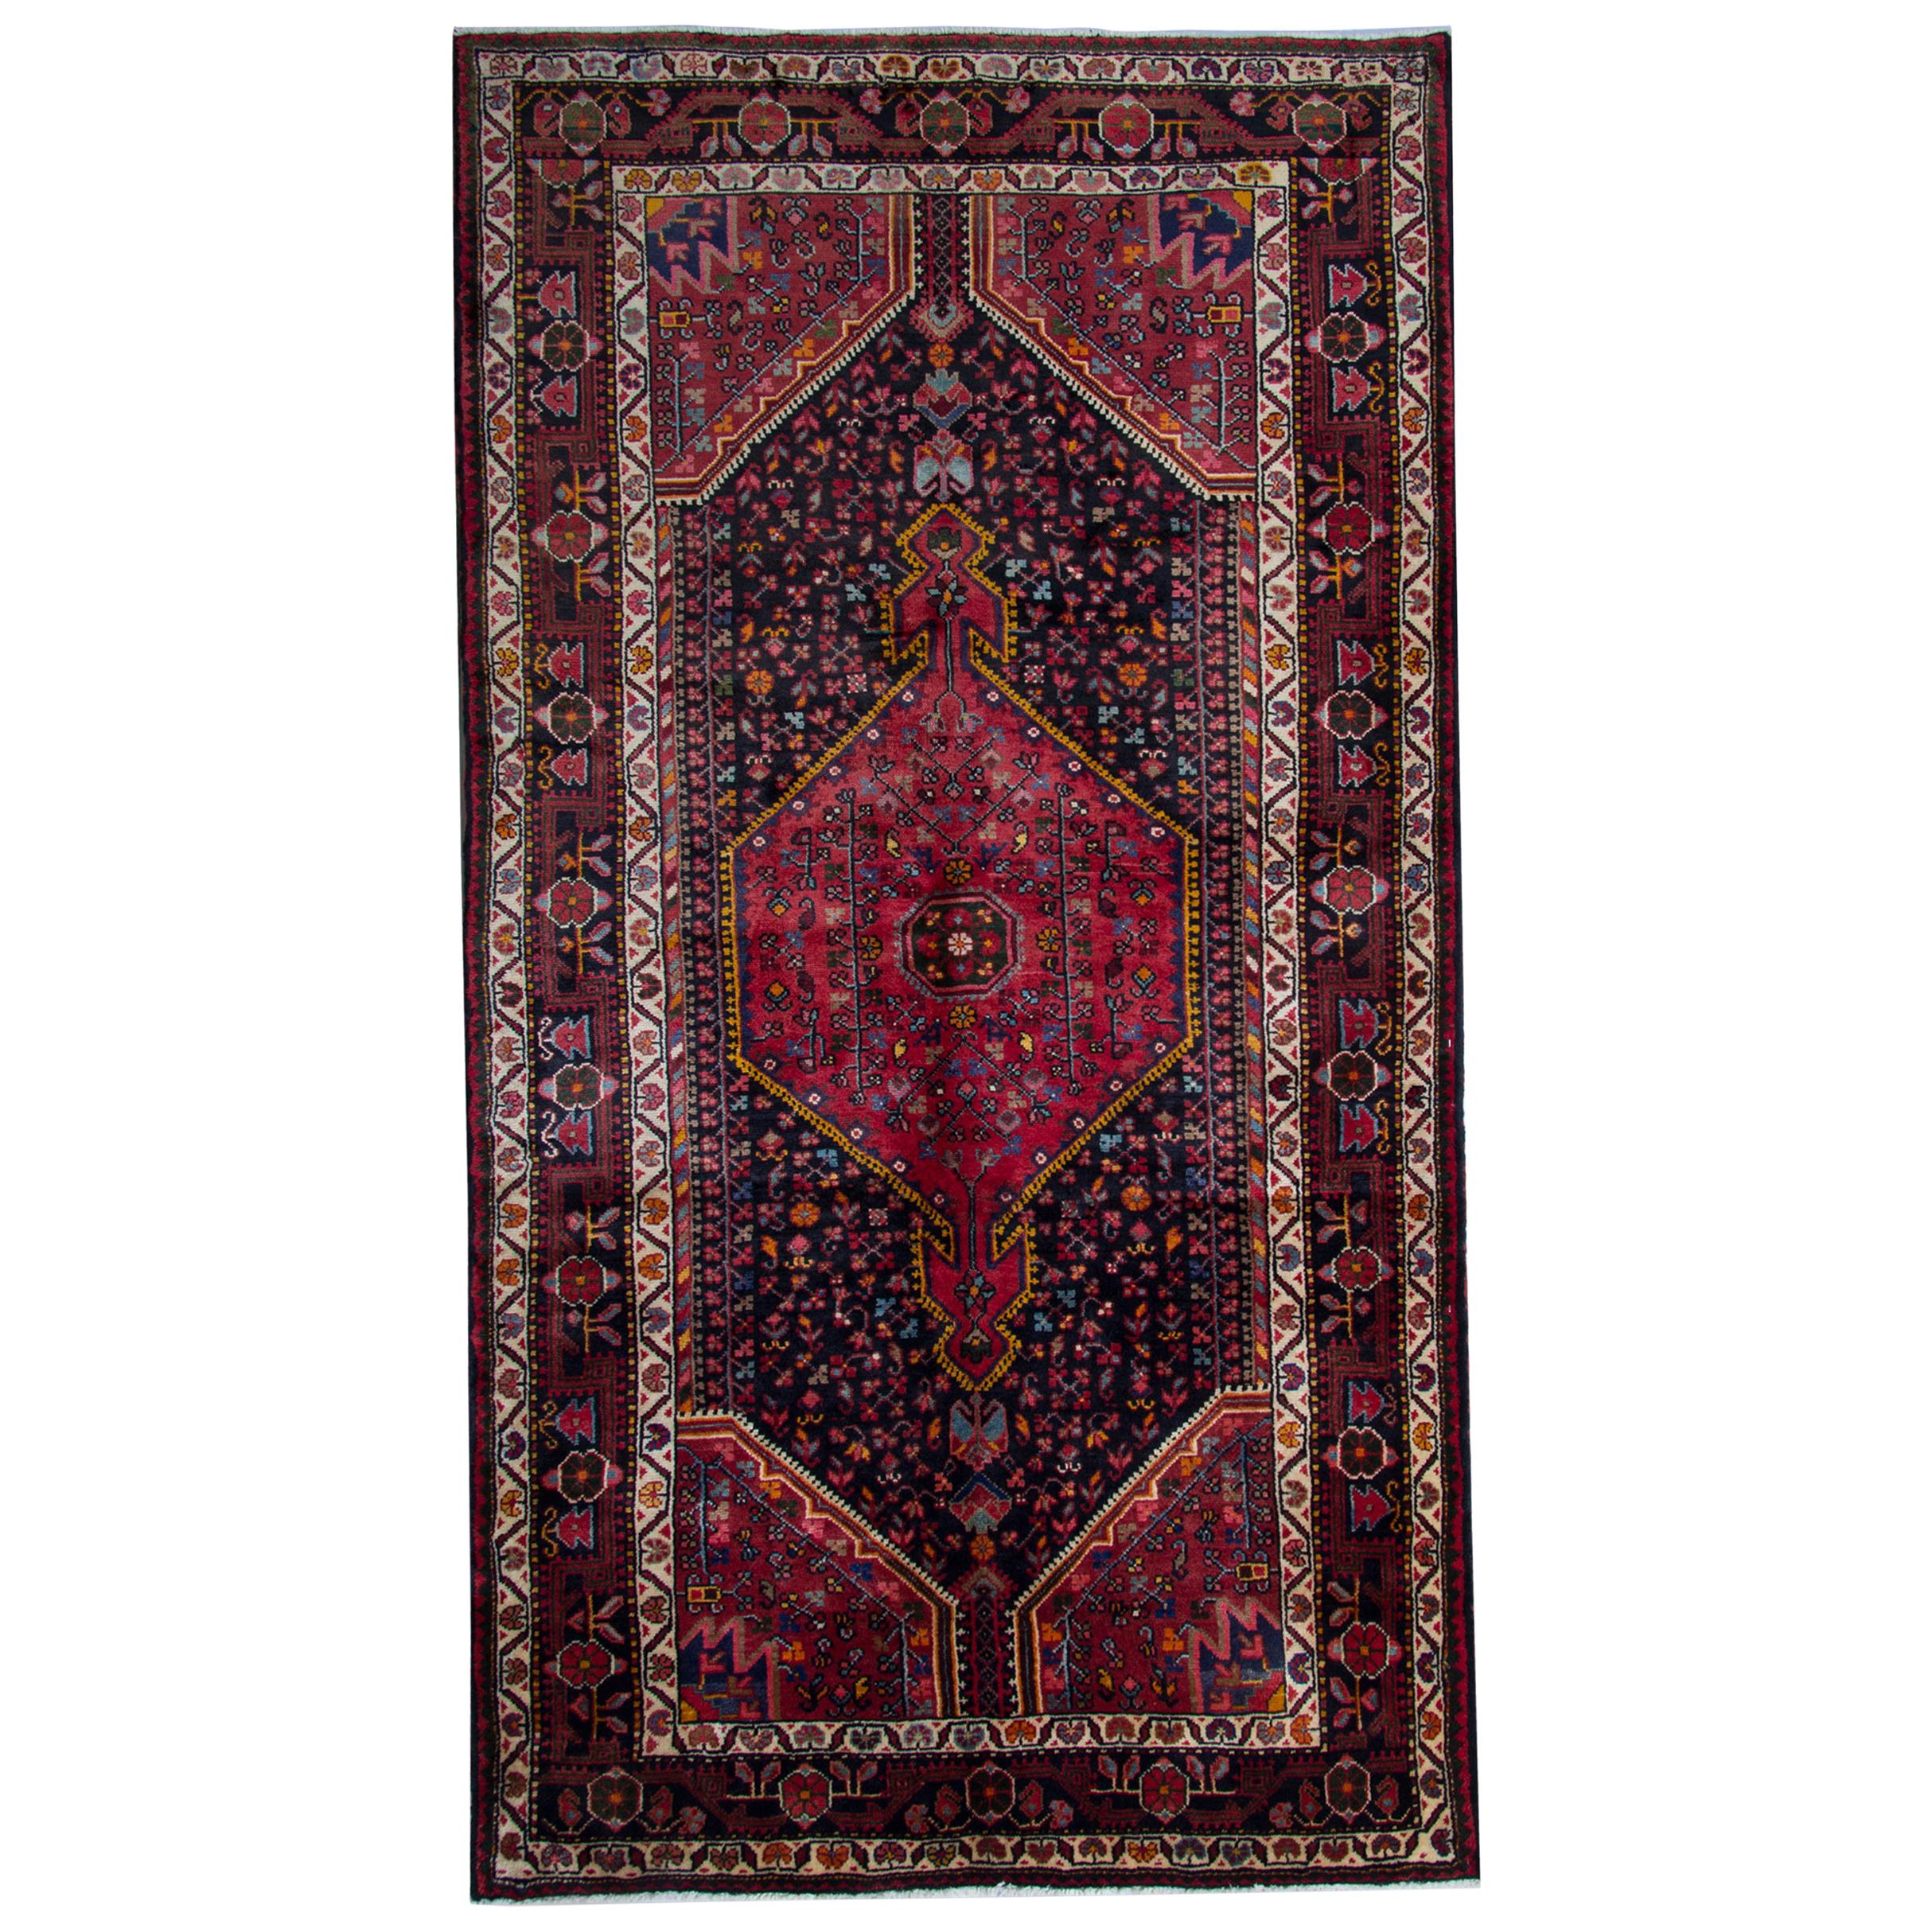 Rustic Carpet Vintage Oriental Rug, Handmade Geometric Wool Carpet